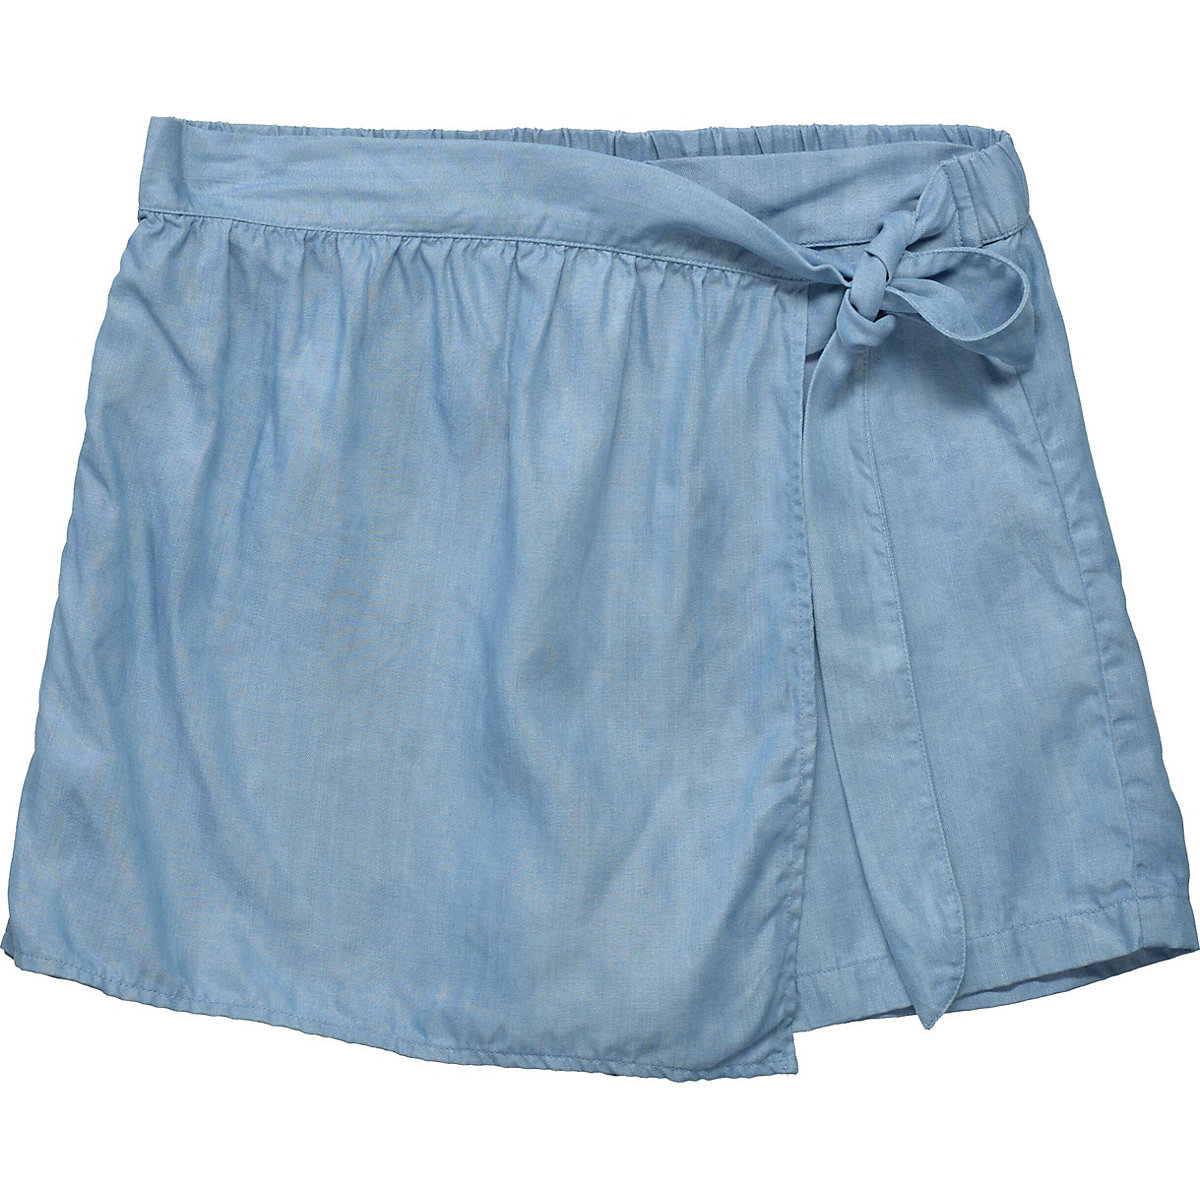 STACCATO Jeansshorts für Mädchen light blue denim